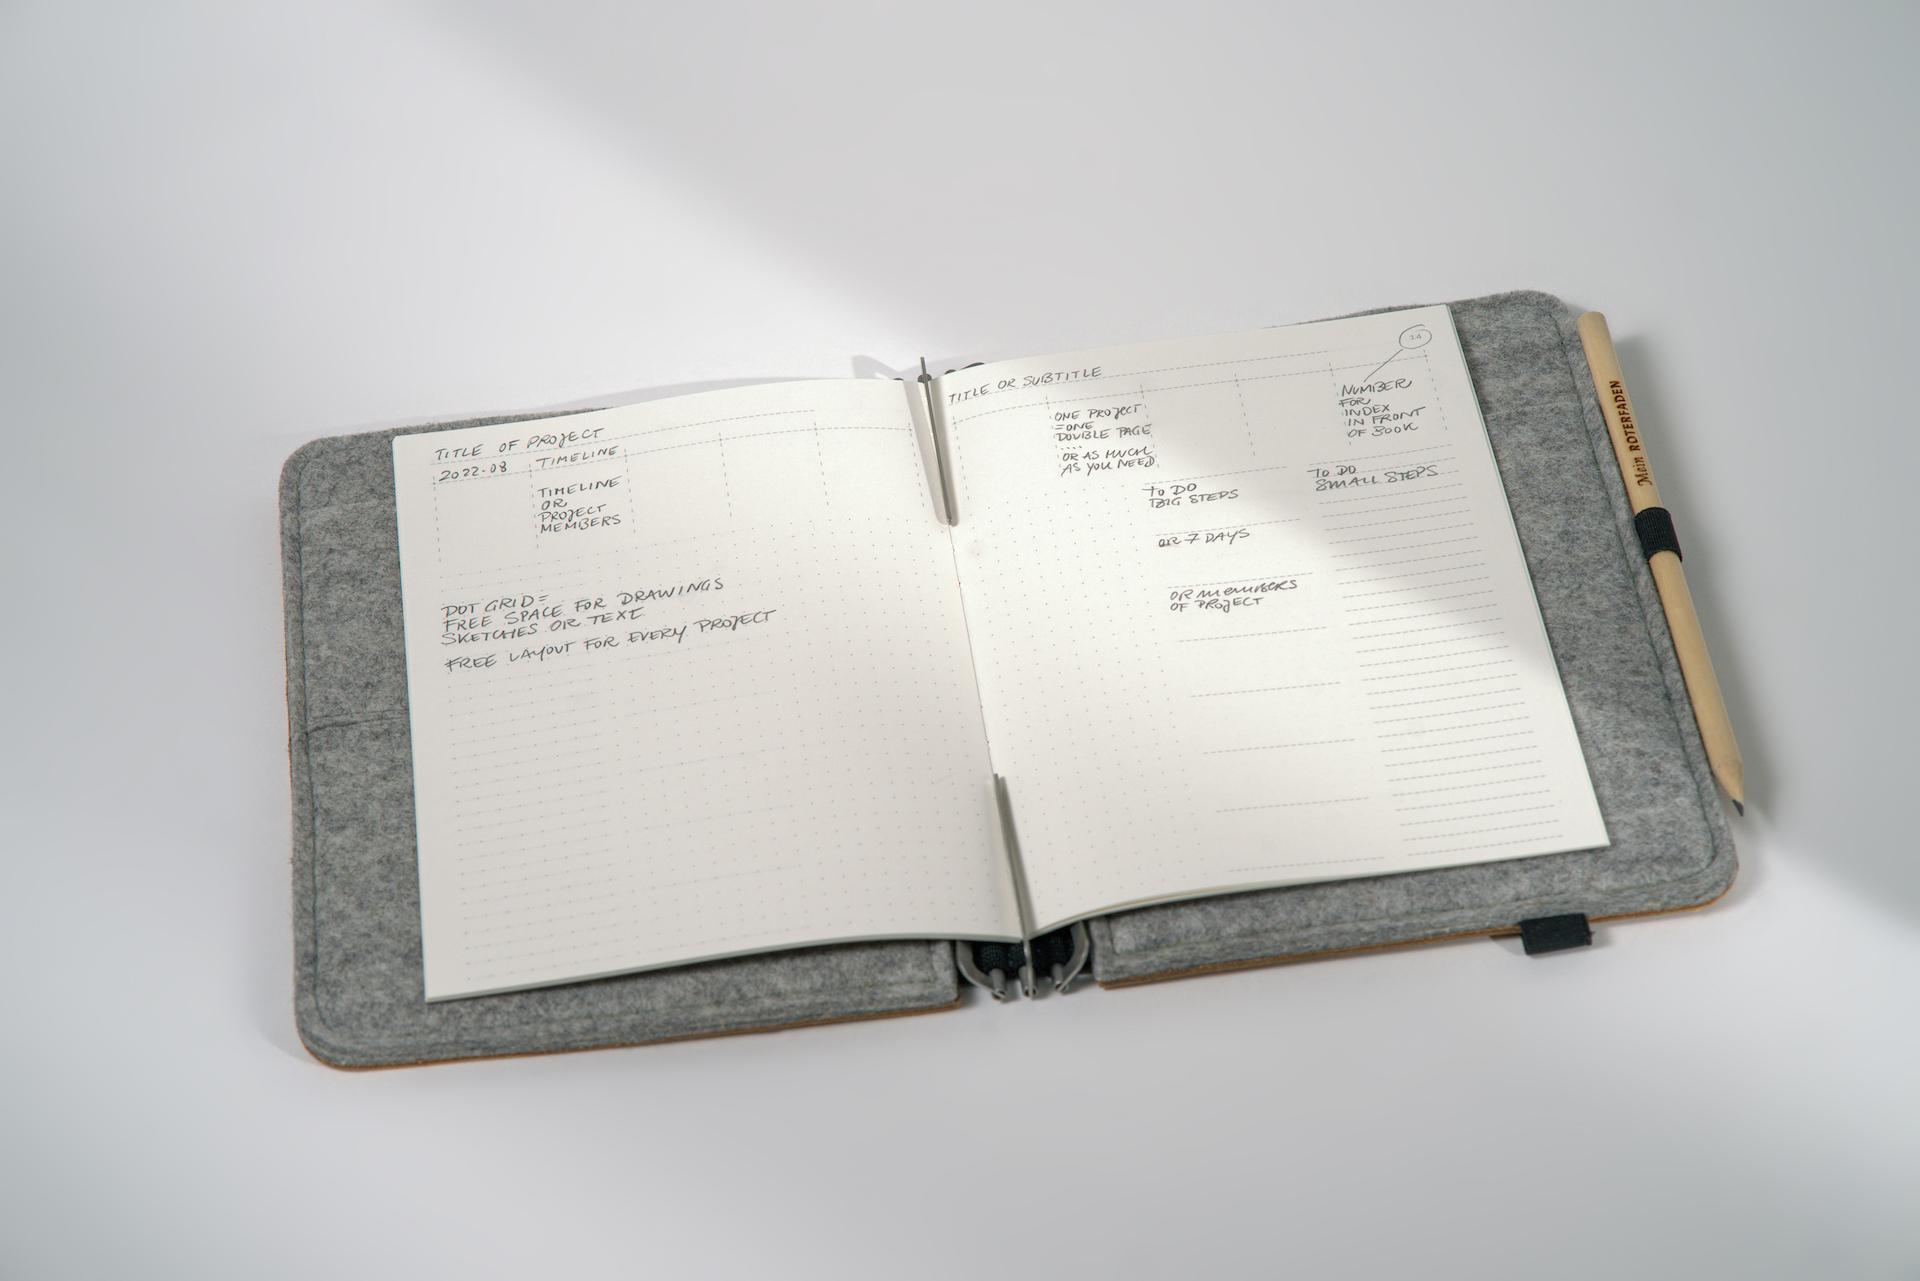 Hochwertiges Fadengeheftetes Notizbuch zur Projektplanung in A5 mit nummerierten Seiten, Zeitleiste auf jeder Doppelseite und festem Einband aus Recyclingkarton.